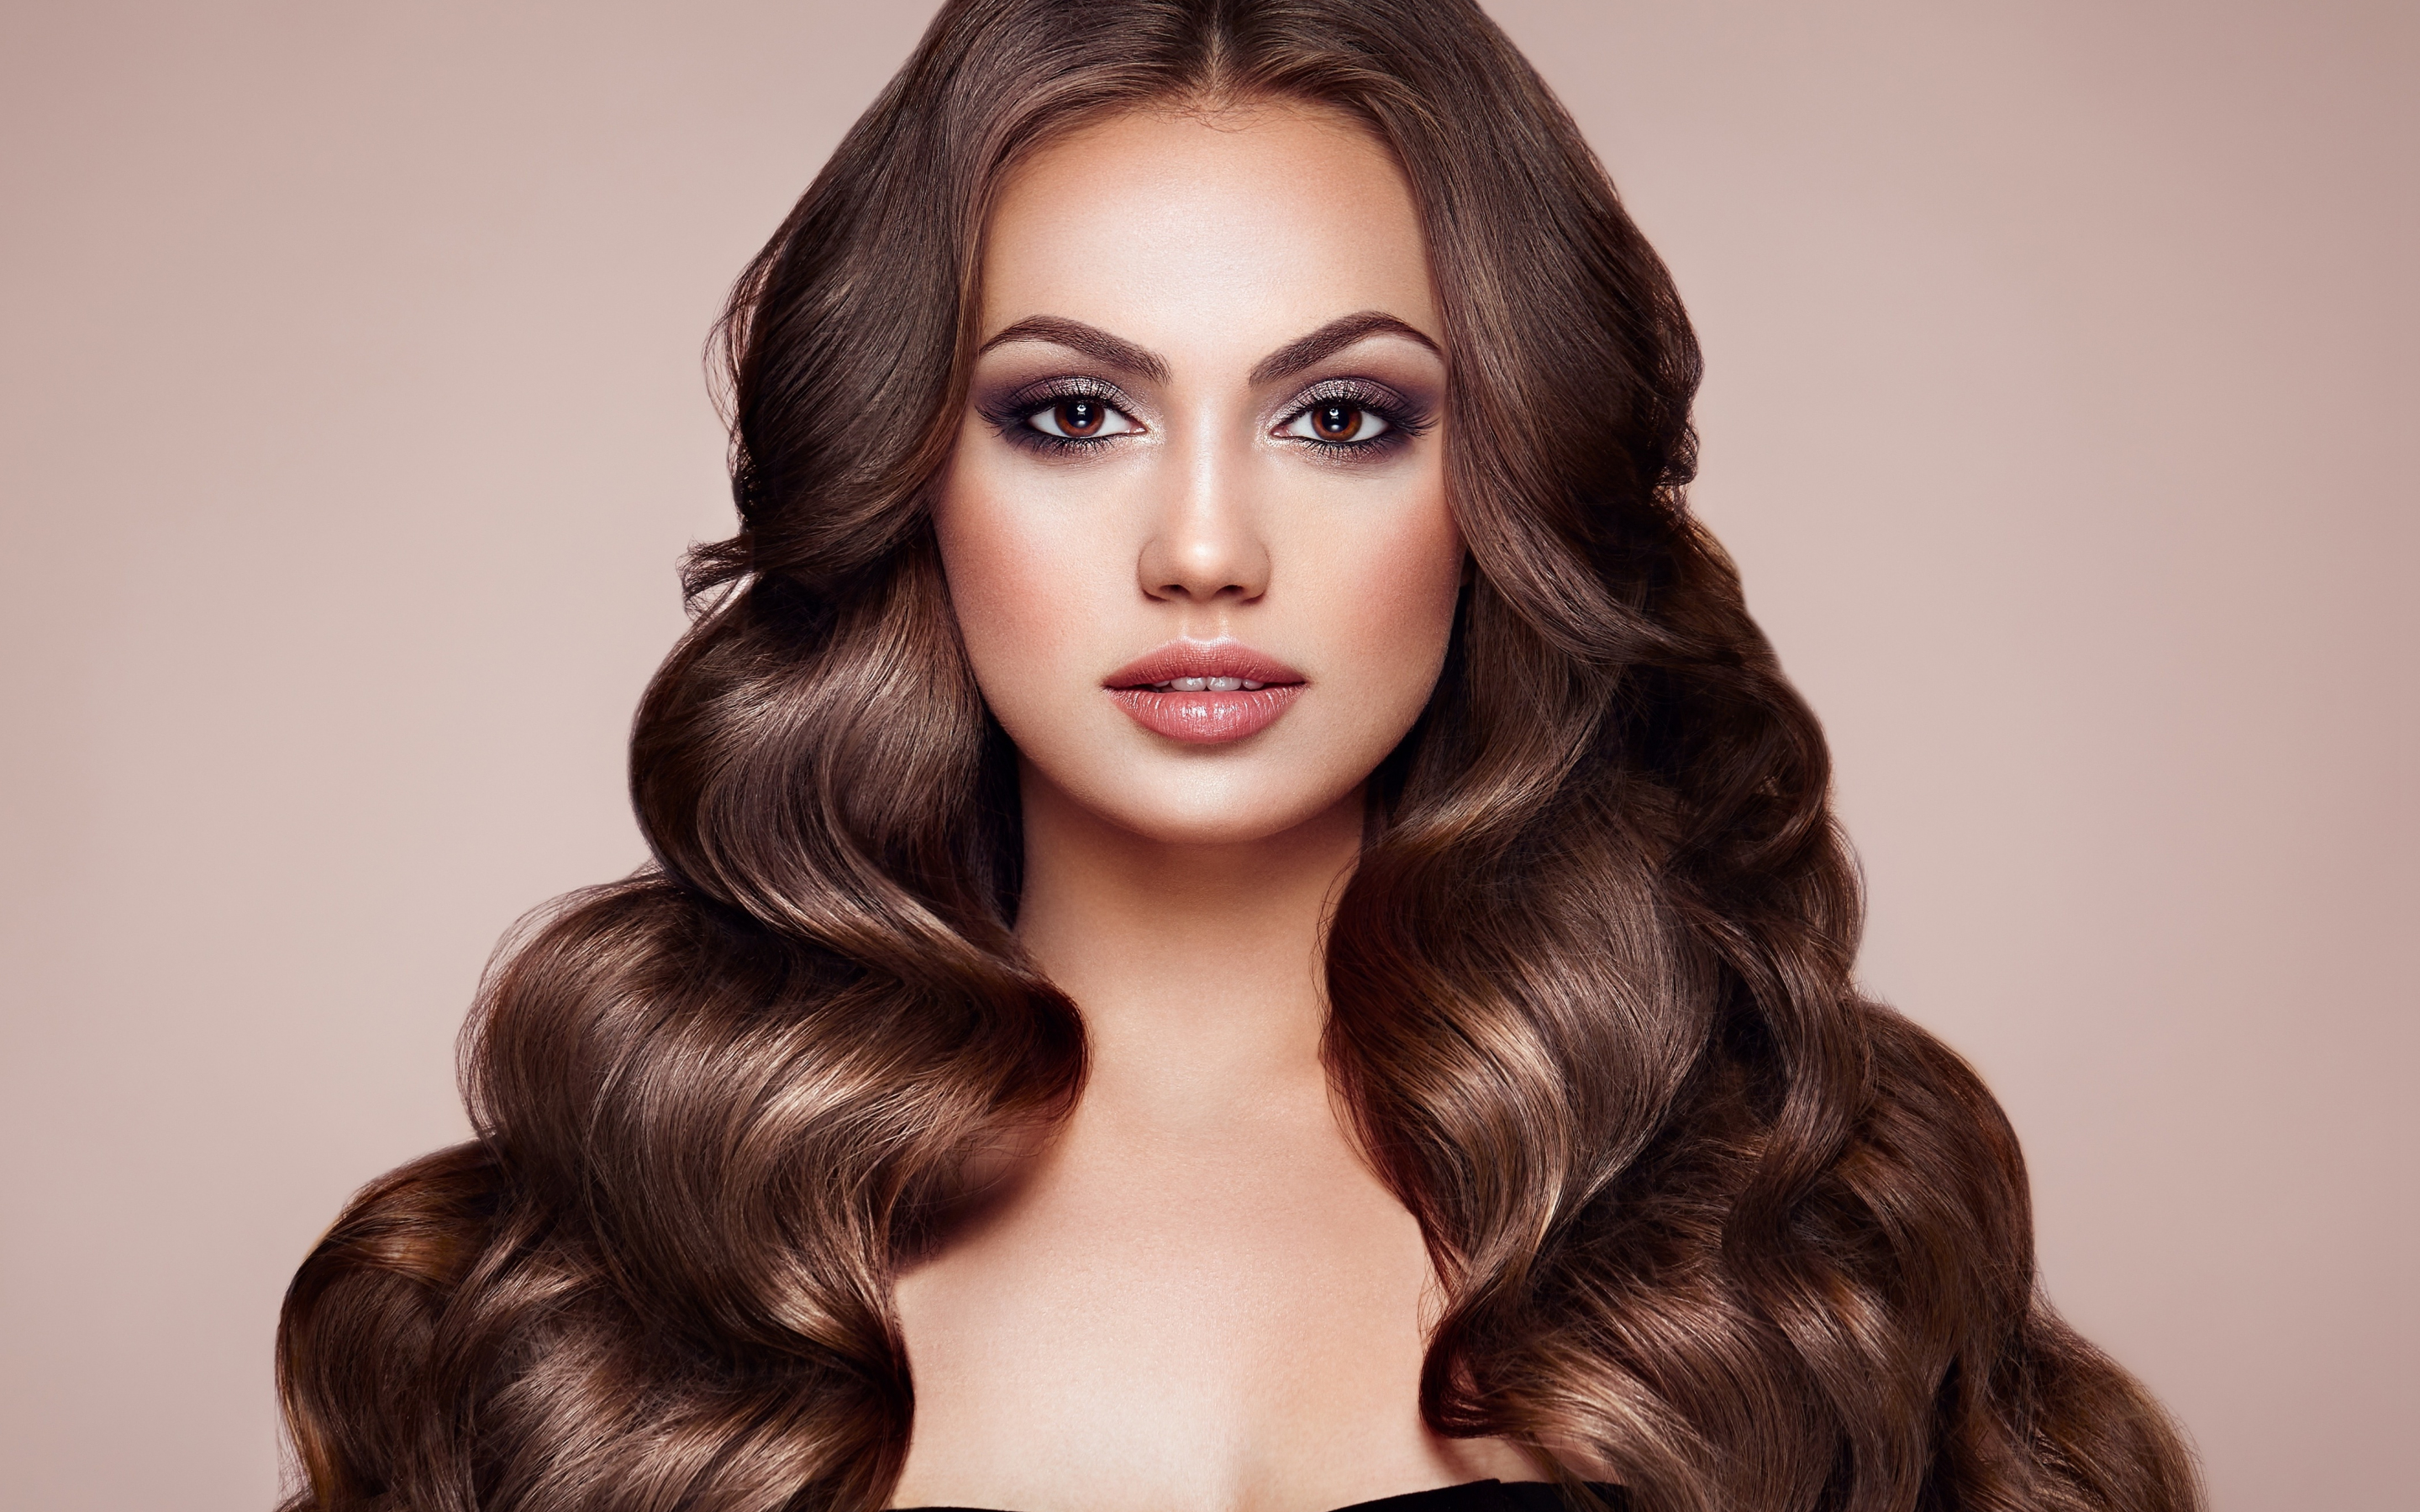 Woman model, curly hair, makeup, brunette, 2880x1800 wallpaper